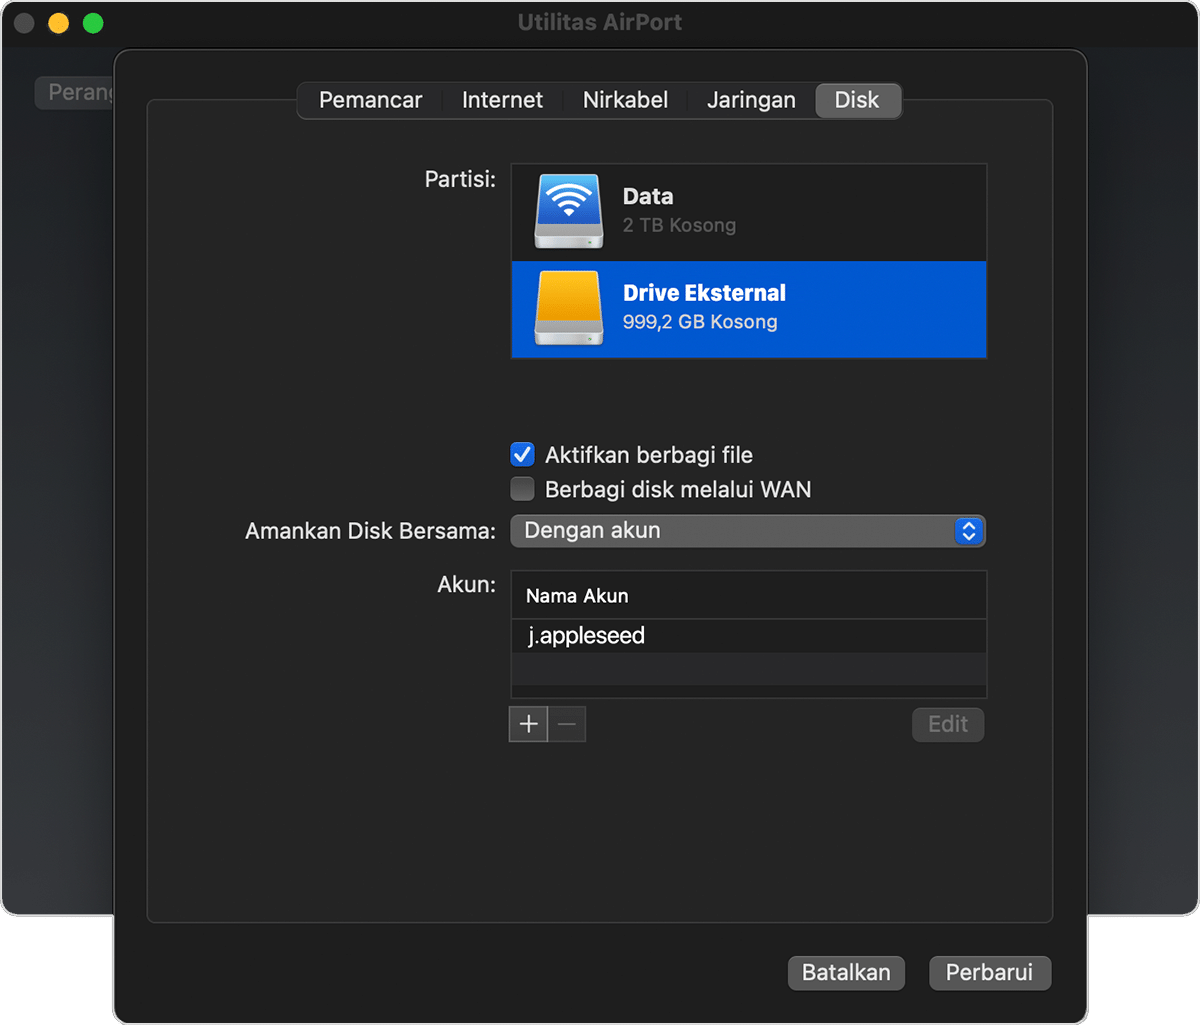 tab Disk pada jendela Utilitas AirPort dengan "Aktifkan berbagi file" dinyalakan